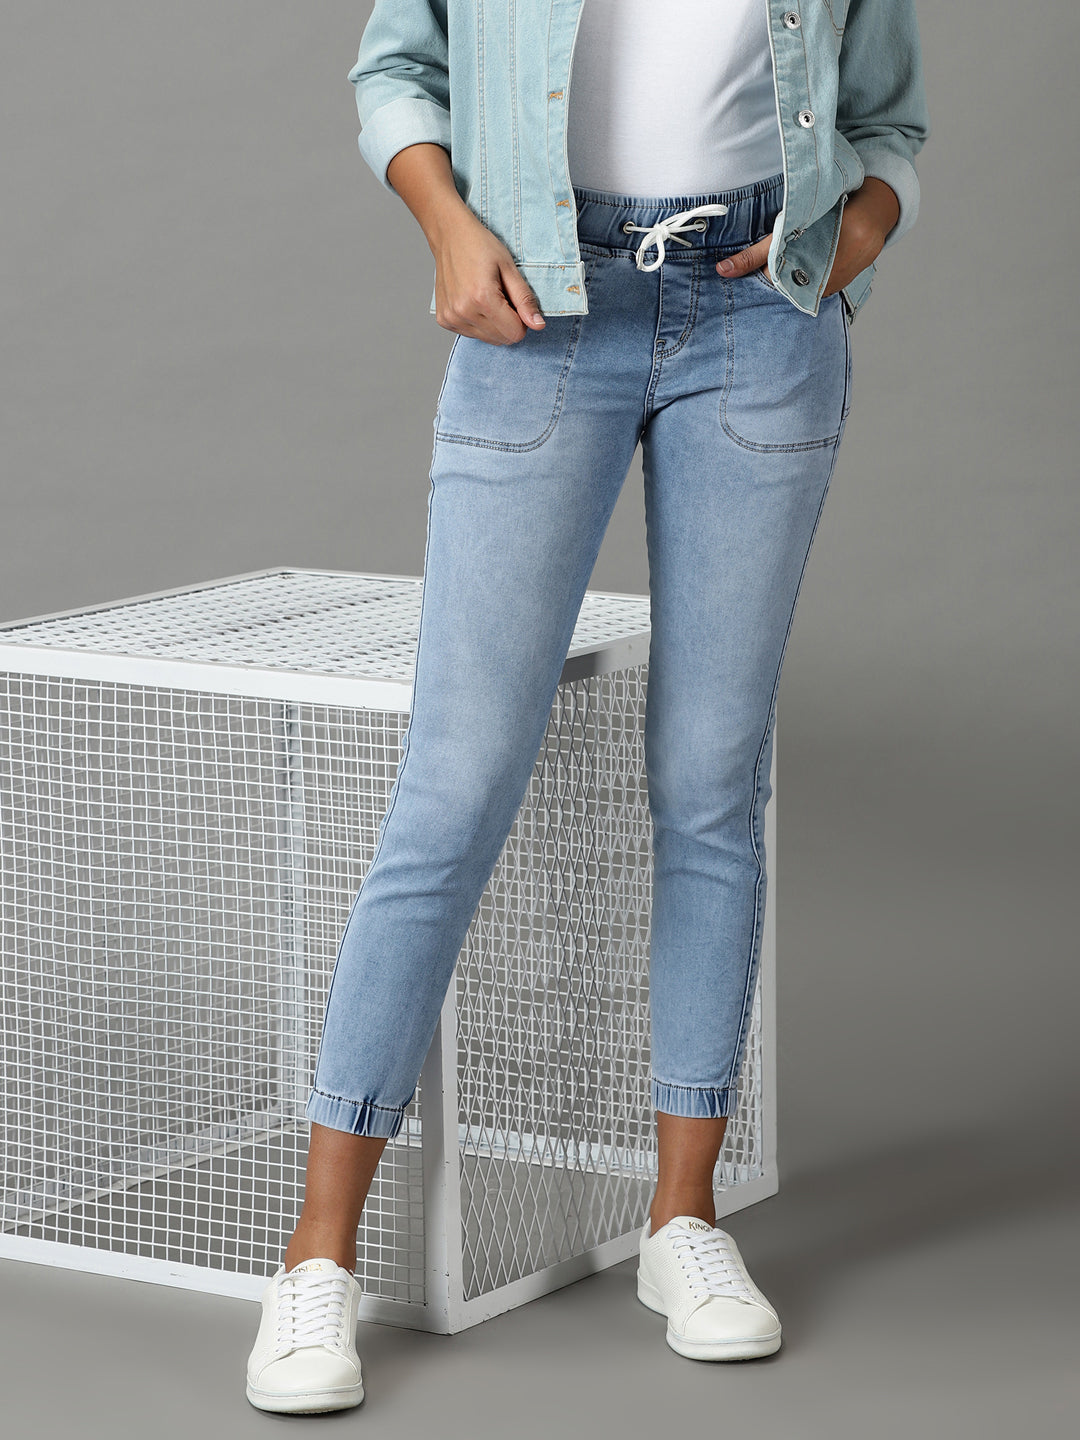 Women's Blue Solid Jogger Denim Jeans